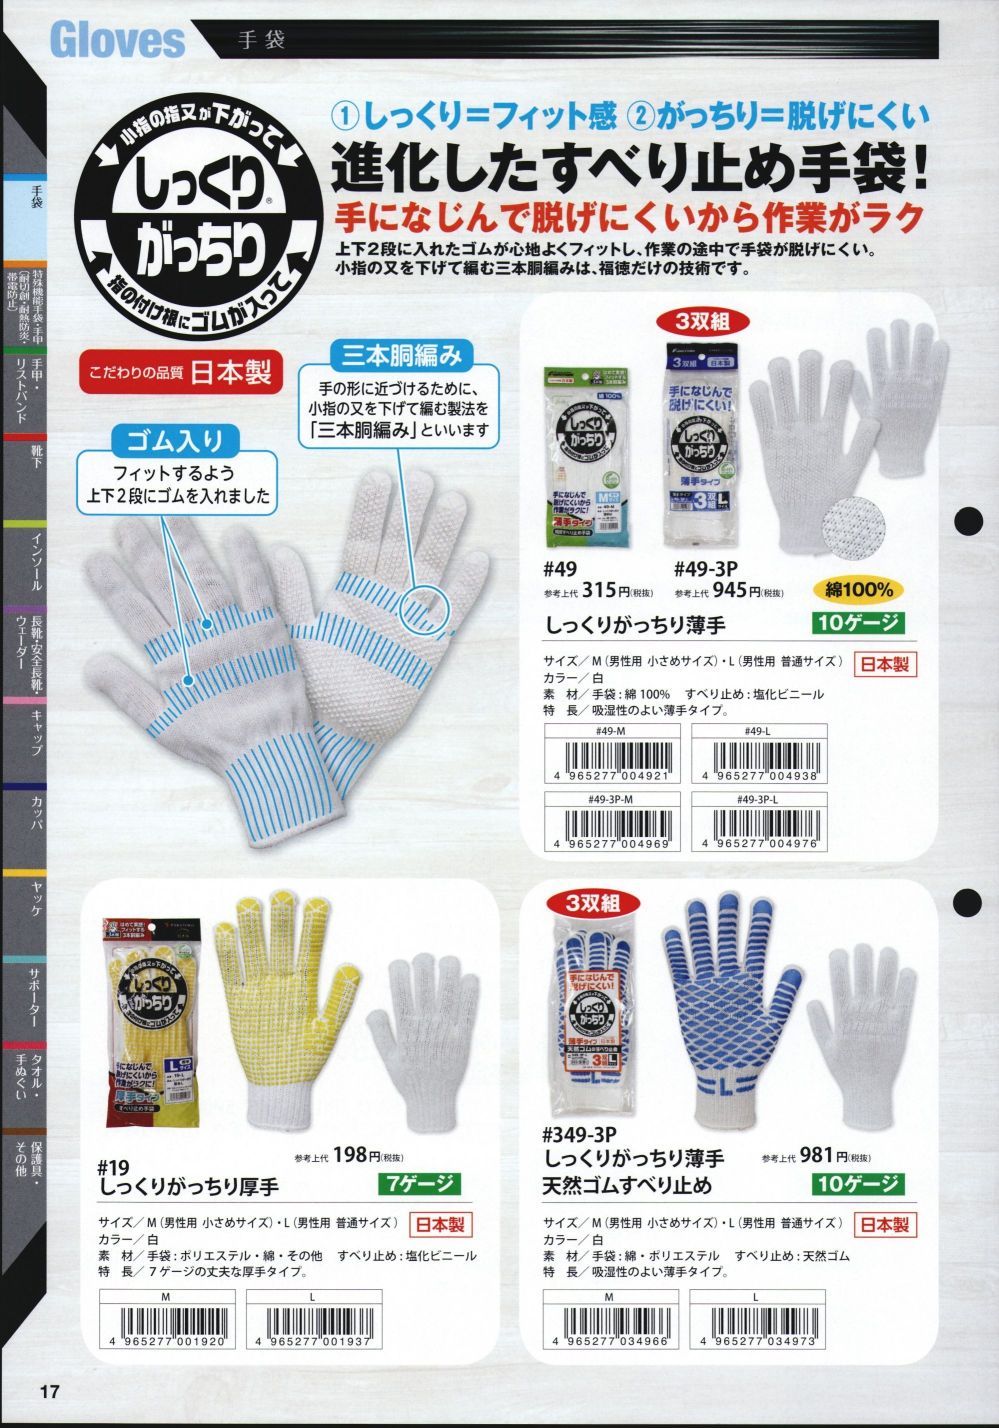 作業用手袋 TRUSCO(トラスコ) 純綿軍手 240双まとめ売り 目付600g TCG600240P - 2